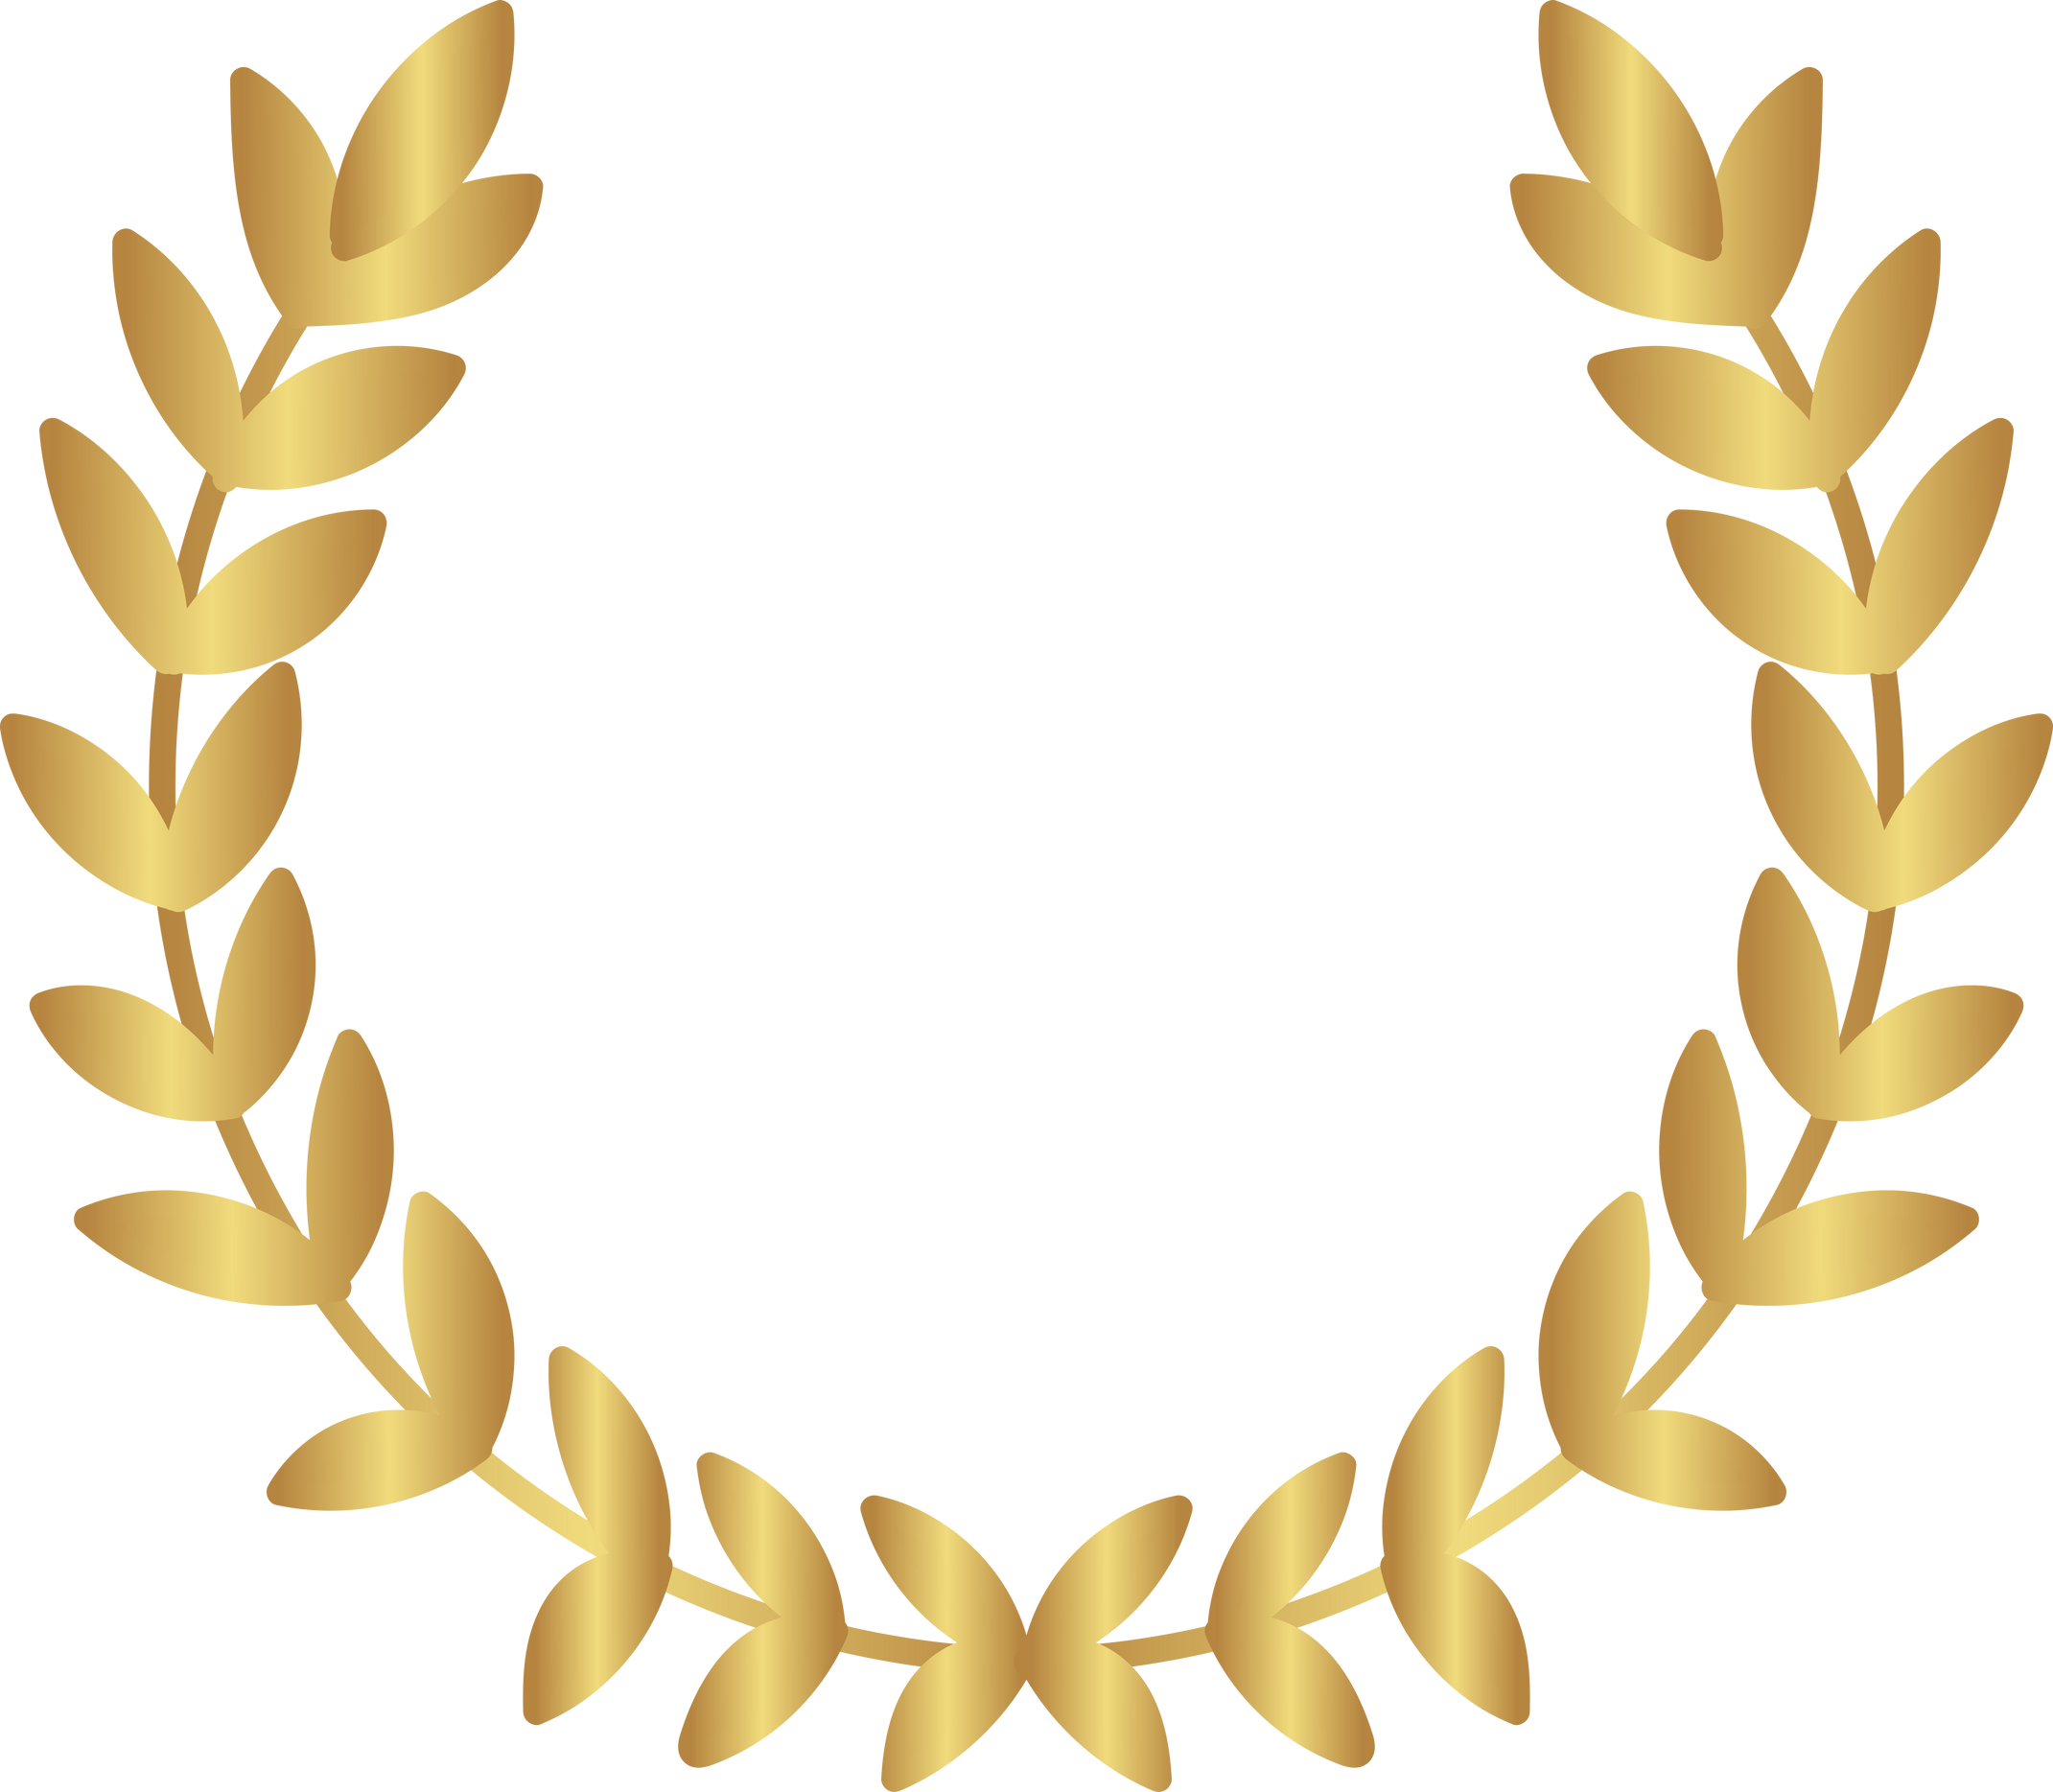 Golden Award Laurel Wreath